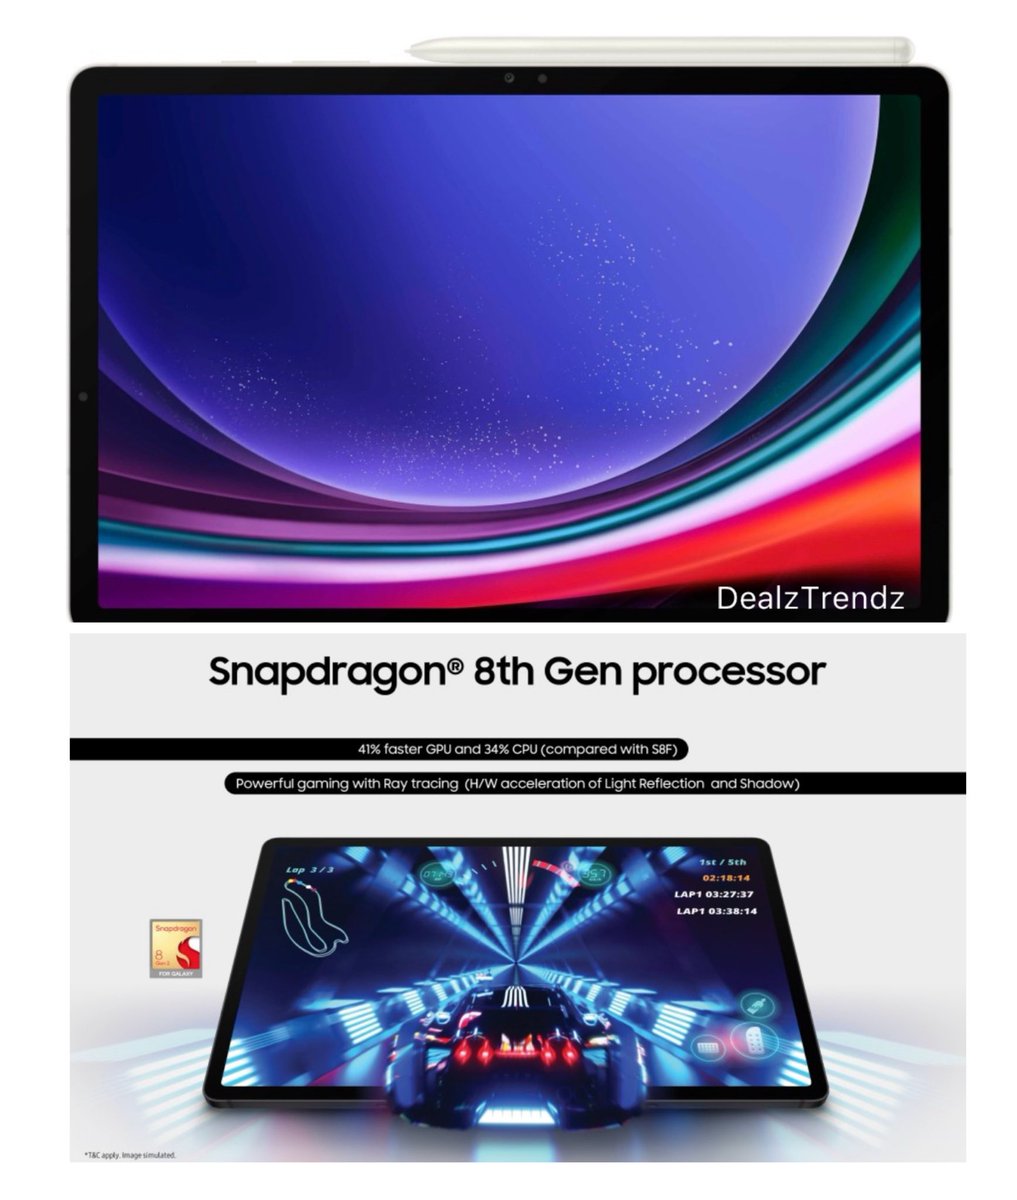 SAMSUNG Galaxy Tab S9 8 GB RAM 128 GB ROM  ₹35,748 में बेस्ट डील है,फ्लिपकार्ट पर. अगर किसी को टैब की तलाश है तो. नॉर्मली ये 70k के अराउंड मिलता है....

बस wifi ऑनली है, SIM वाला महंगा ही है😐

#BestDeal